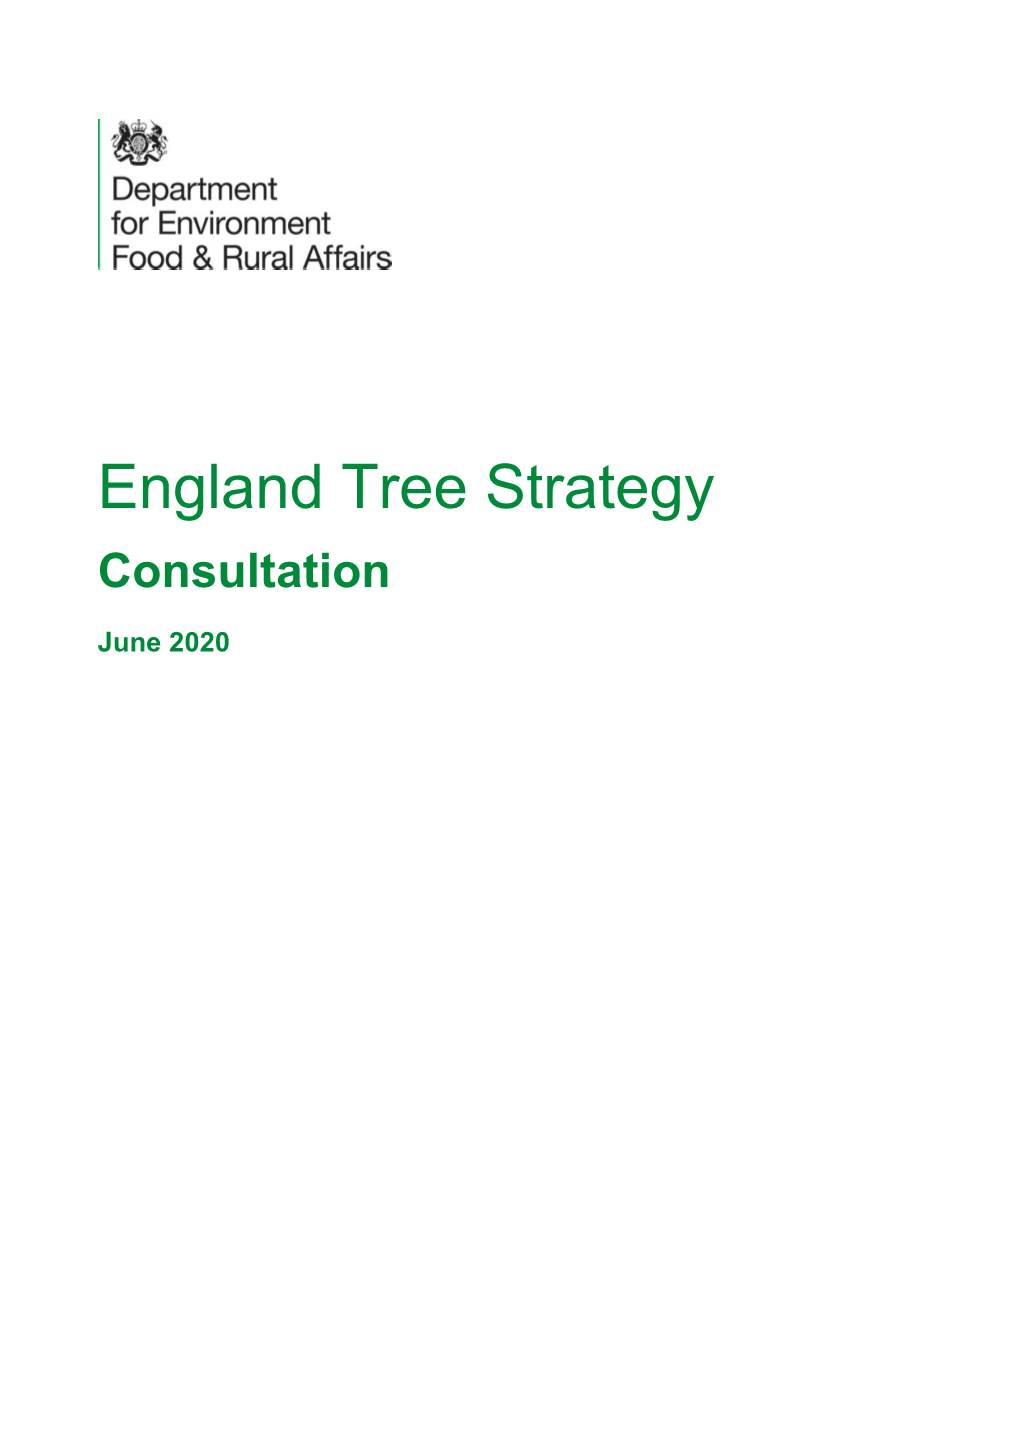 England Tree Strategy Consultation